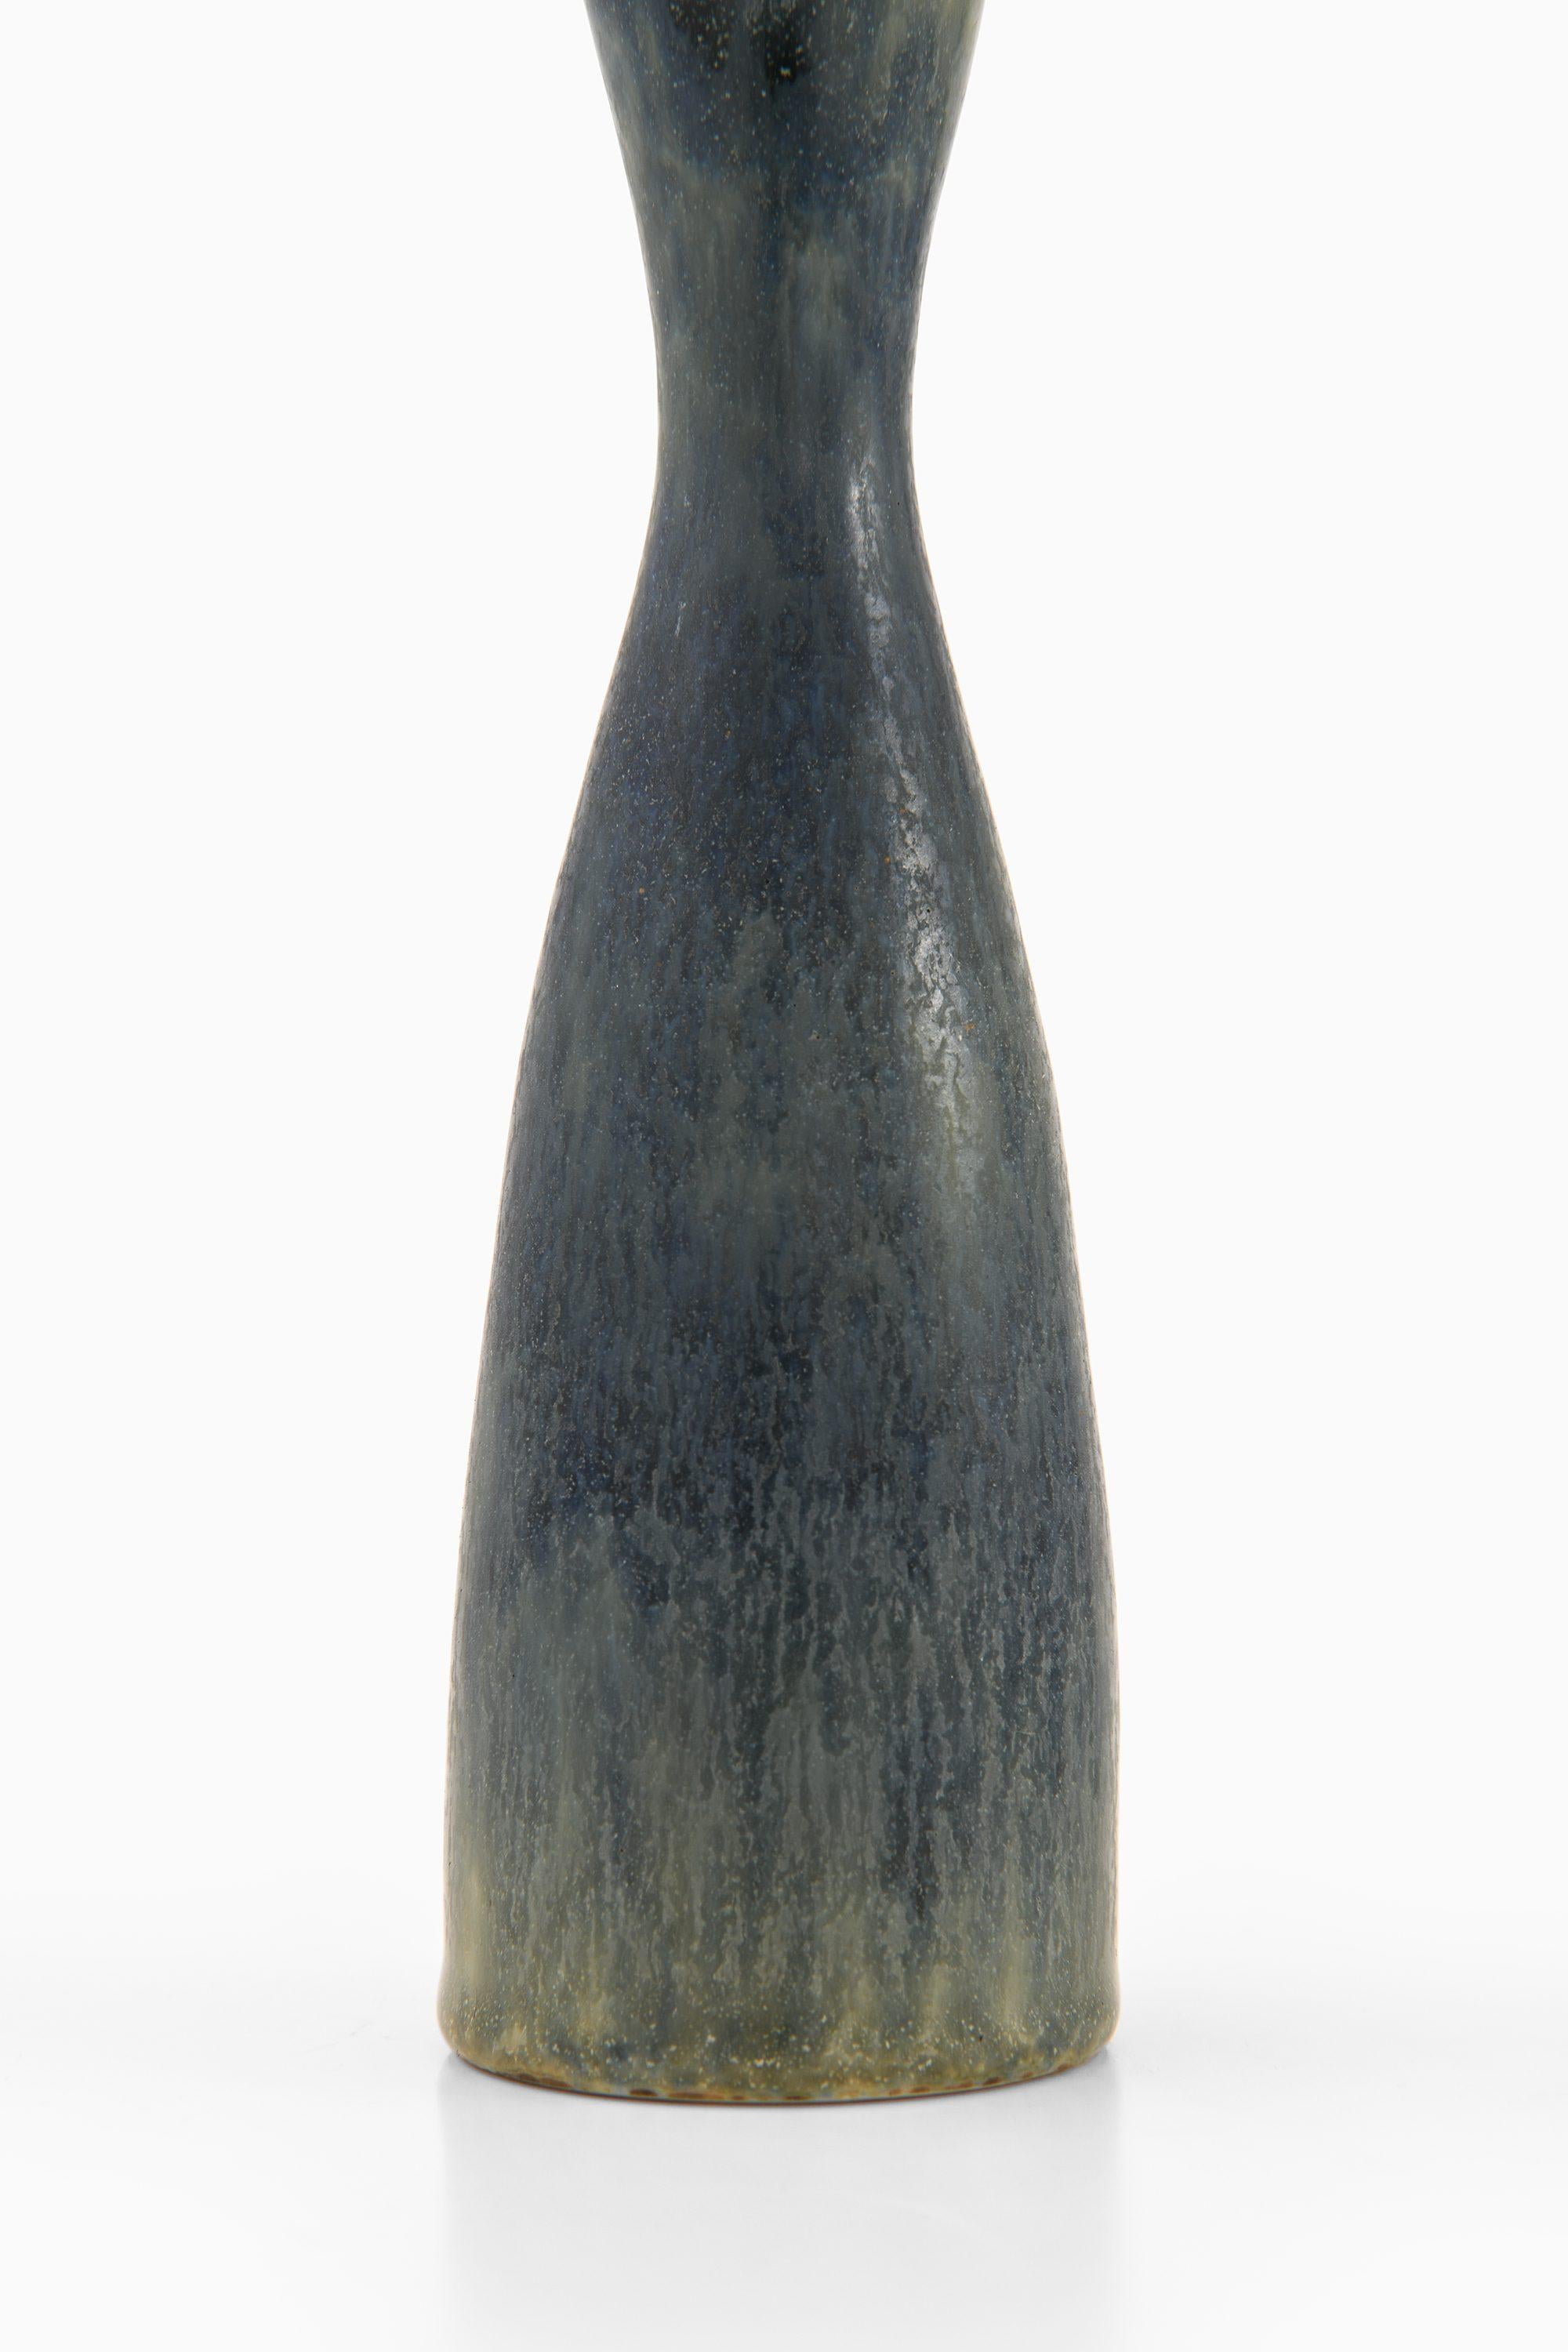 Swedish Ceramic Vase by Carl-Harry Stålhane, 1960's Rörstrand in Sweden For Sale